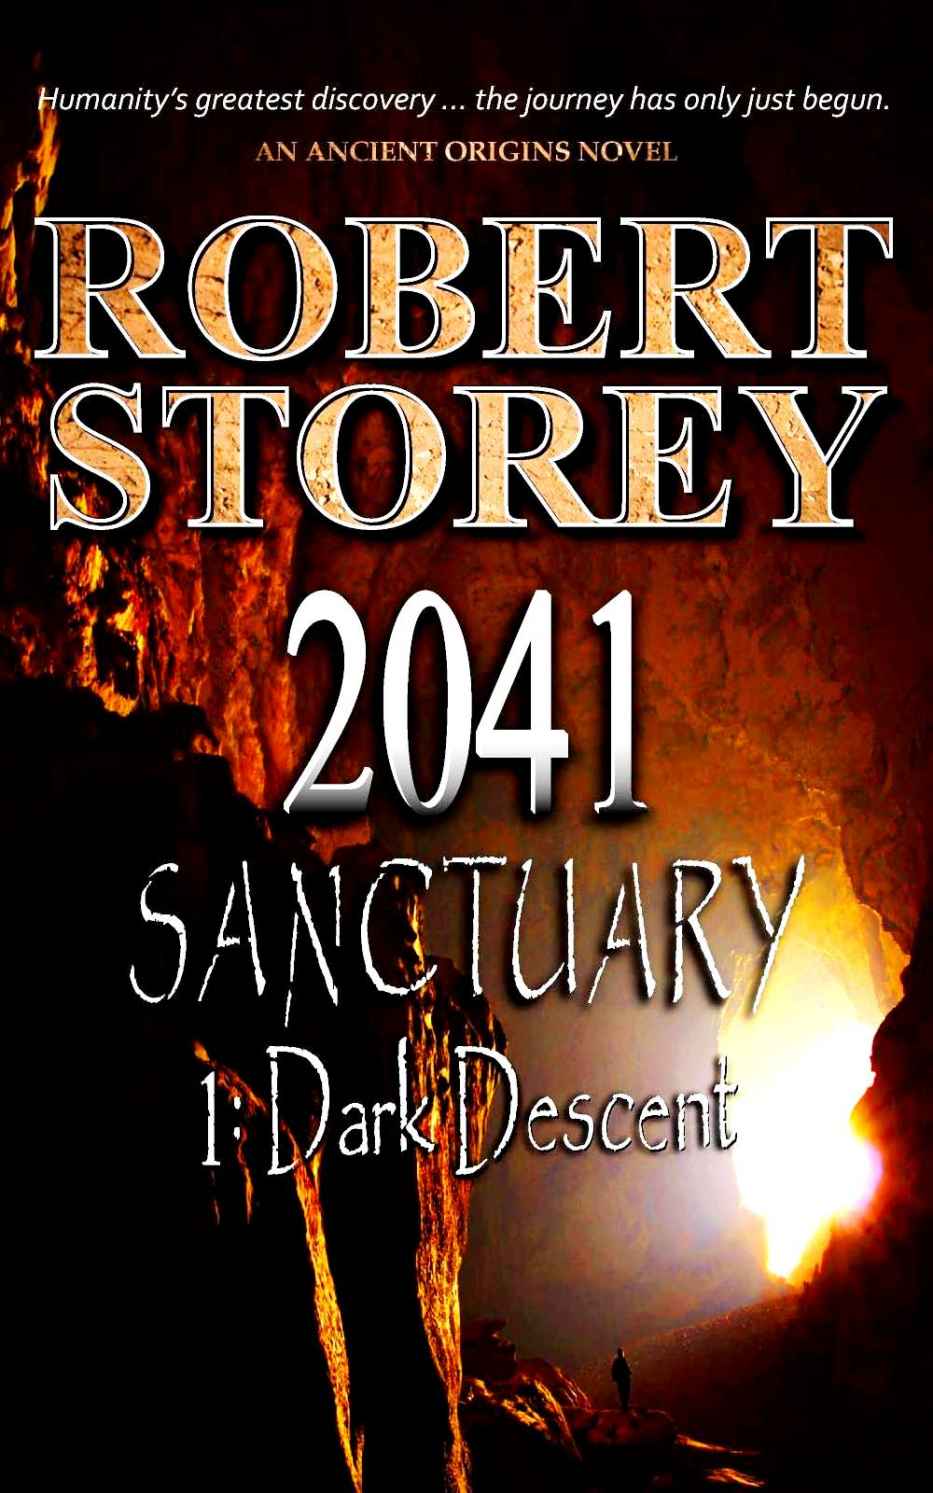 2041 Sanctuary (Dark Descent)